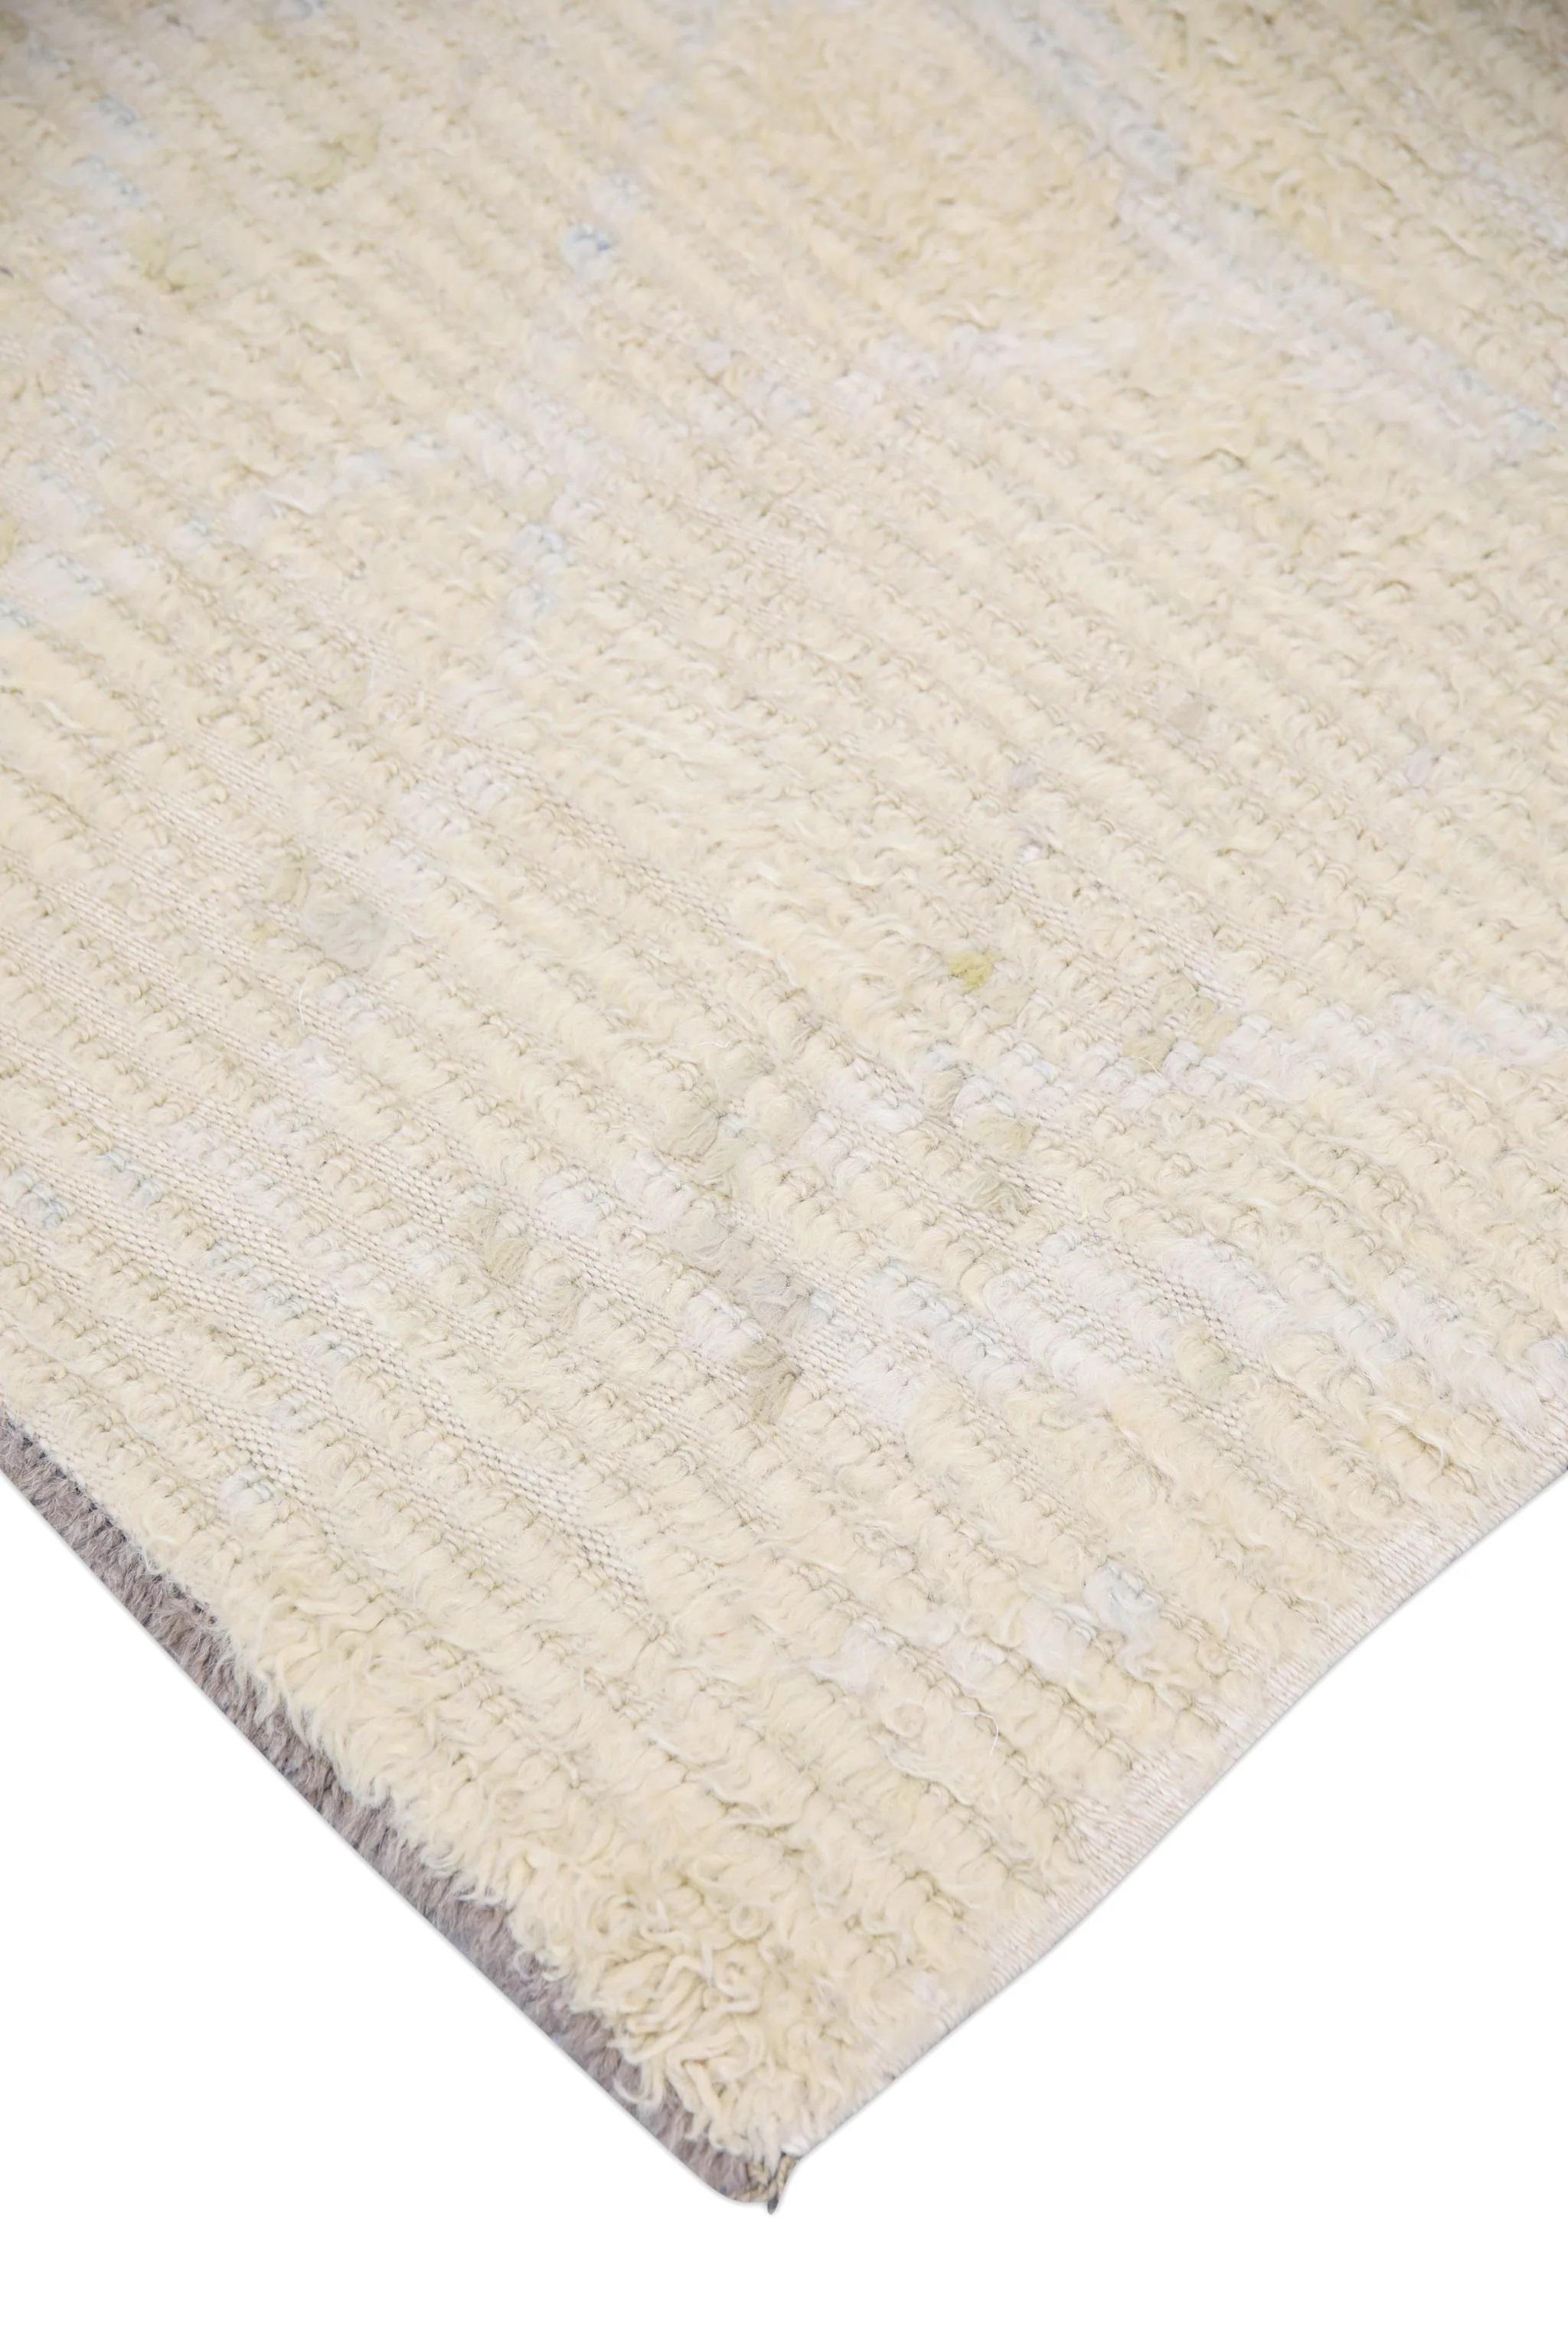 Ein atemberaubender moderner türkischer Tulu-Teppich, der jedem Raum einen Hauch von Wärme und Luxus verleiht. Dieser Teppich wurde in sorgfältiger Handarbeit mit traditionellen Techniken gewebt, was seine Qualität und Haltbarkeit garantiert.

Der